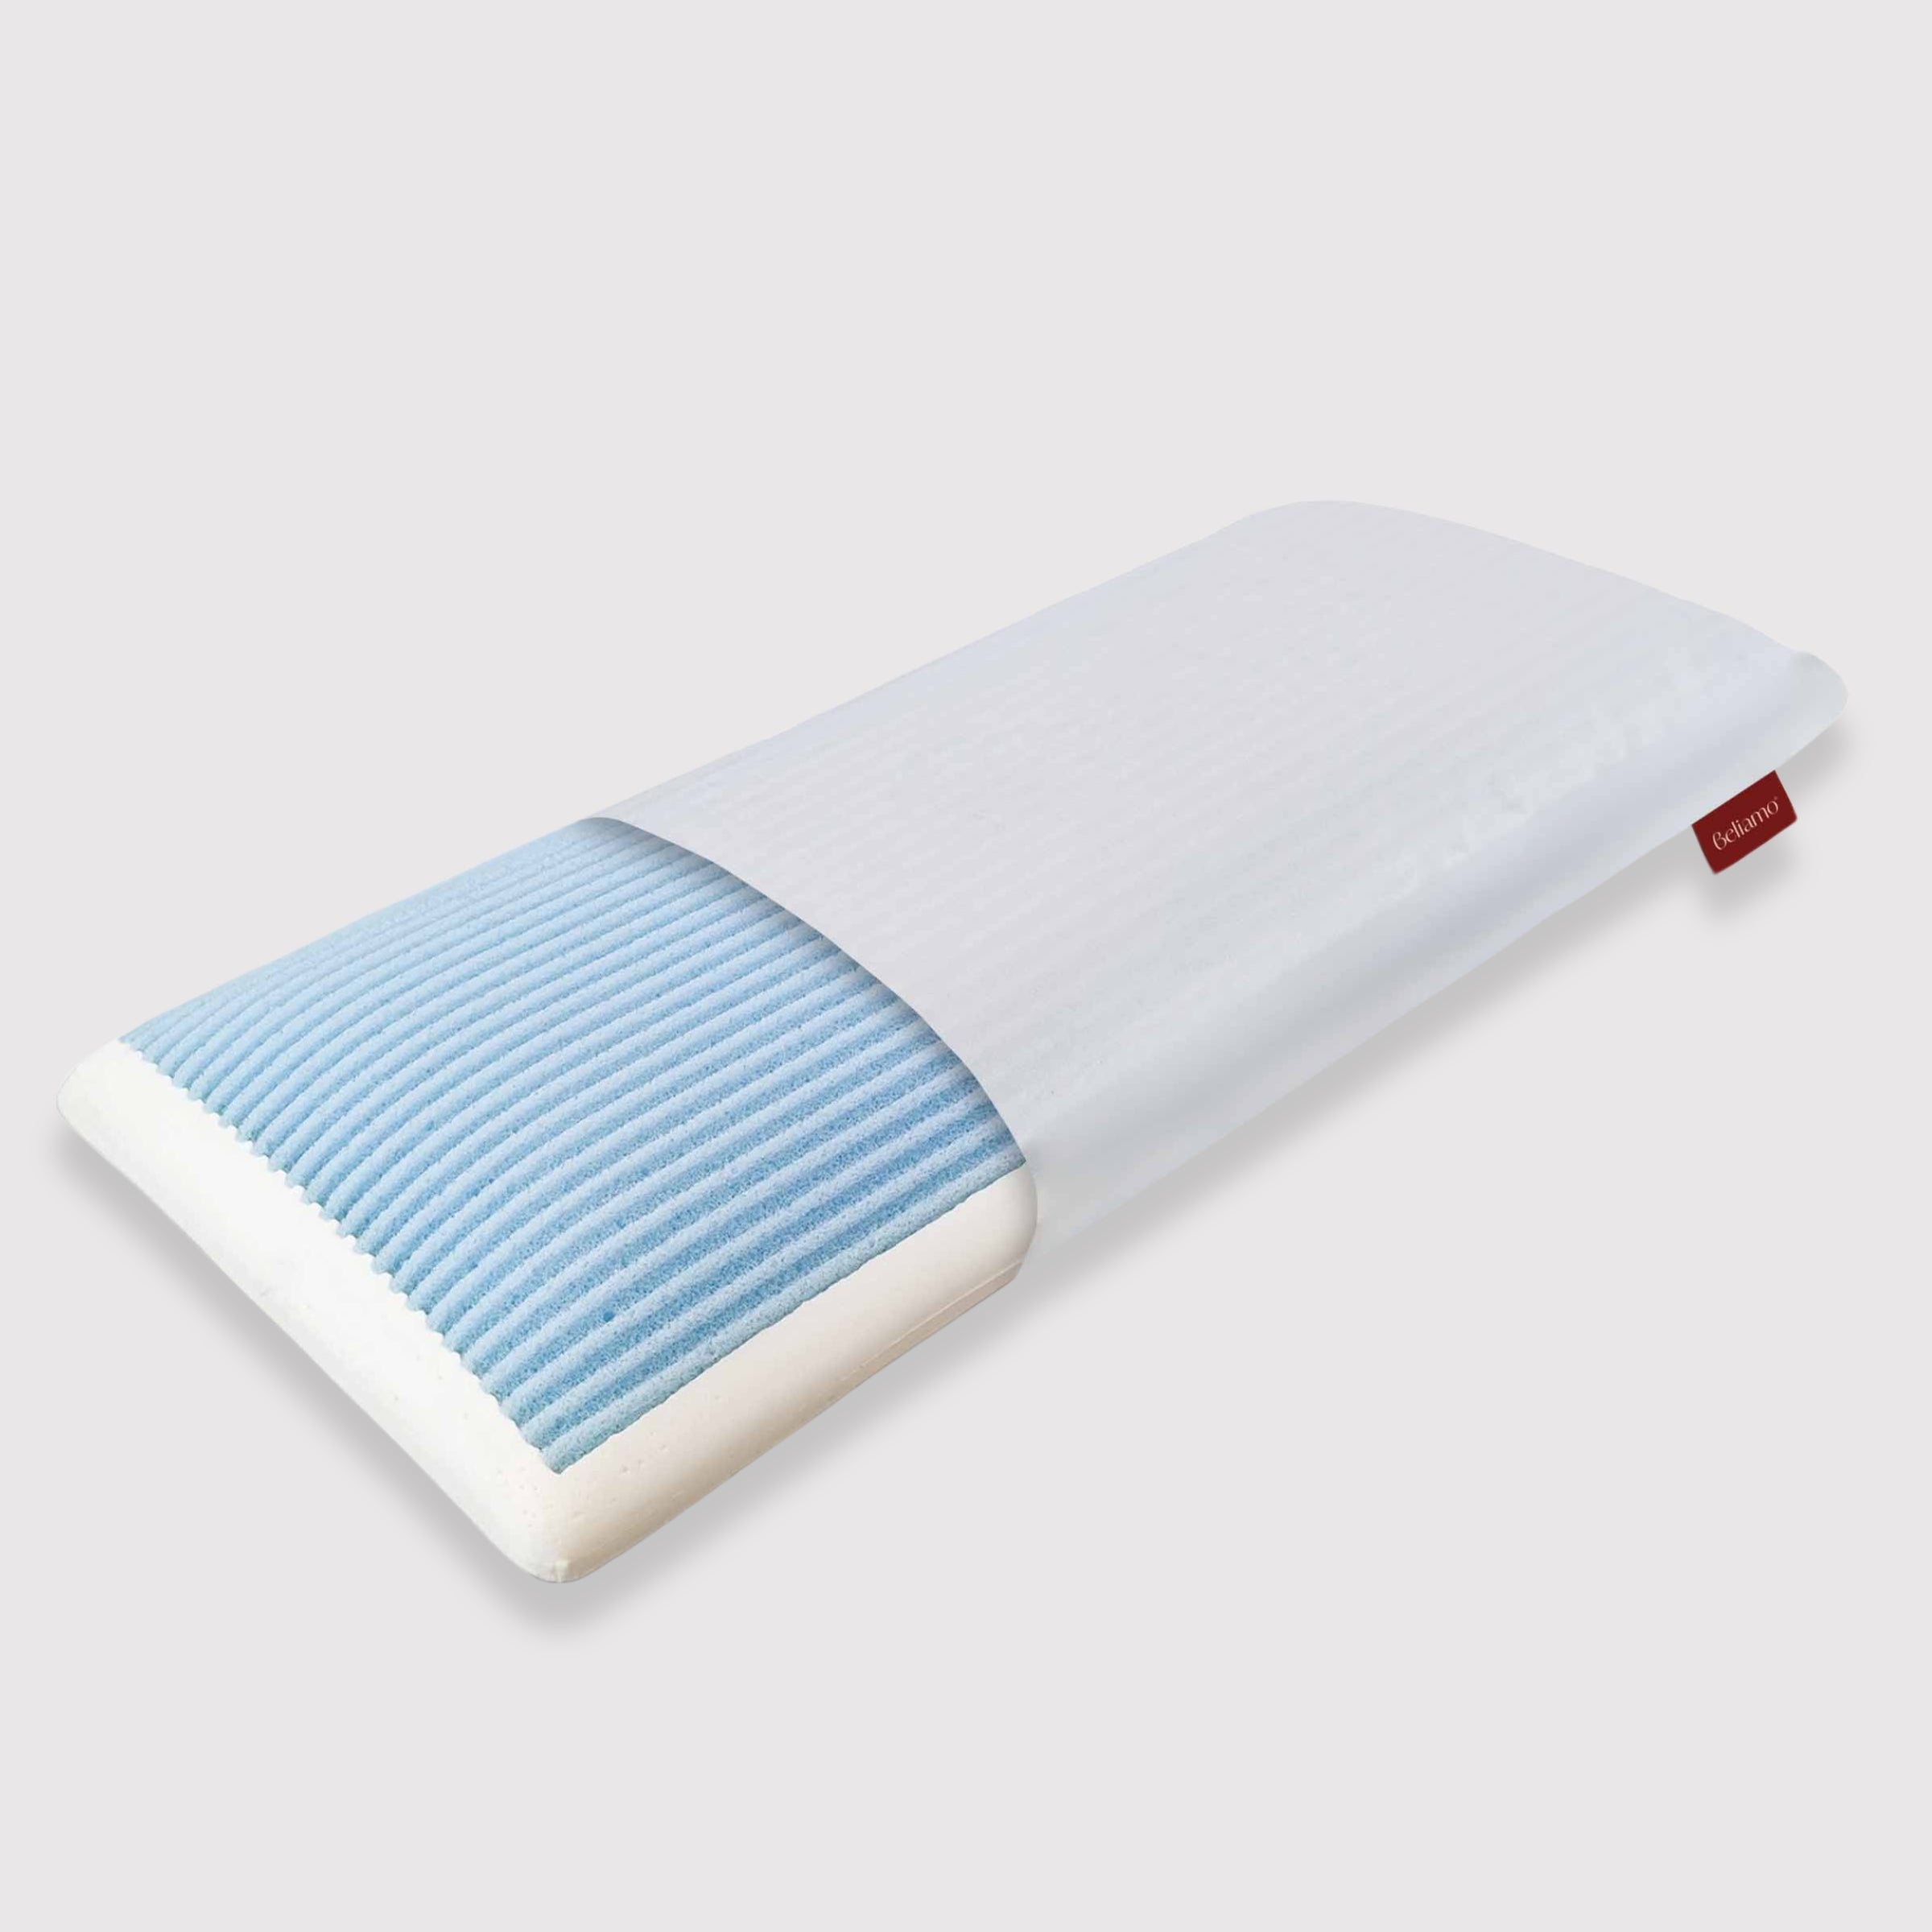 Cuscino LIGNANO LIGHT Intellifoam e Hydrogel traspirante - Comfort e freschezza per un riposo ottimale su Beliamo.com